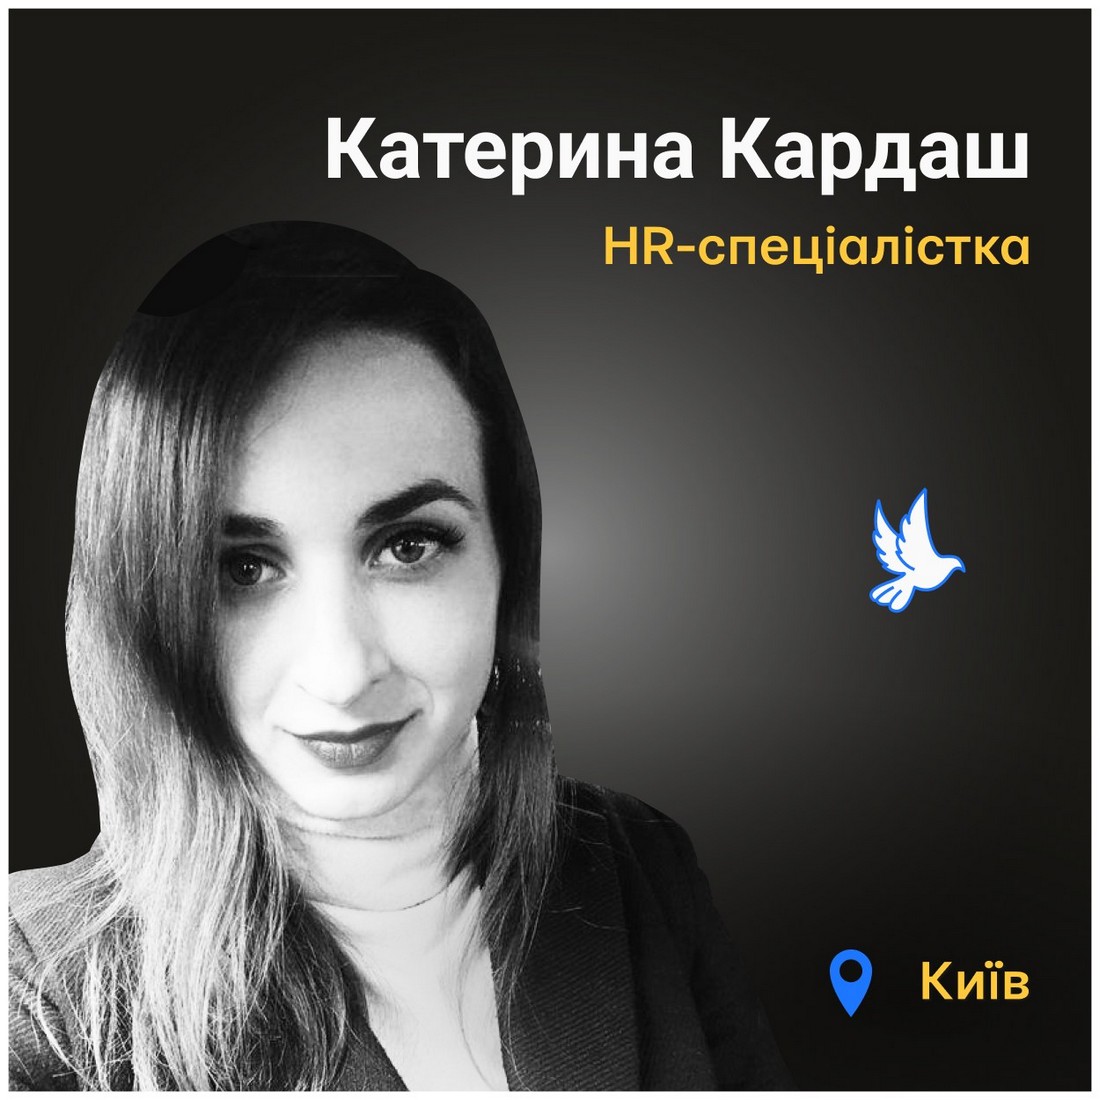 Меморіал: вбиті росією. Катерина Кардаш, 33 роки, Київ, травень